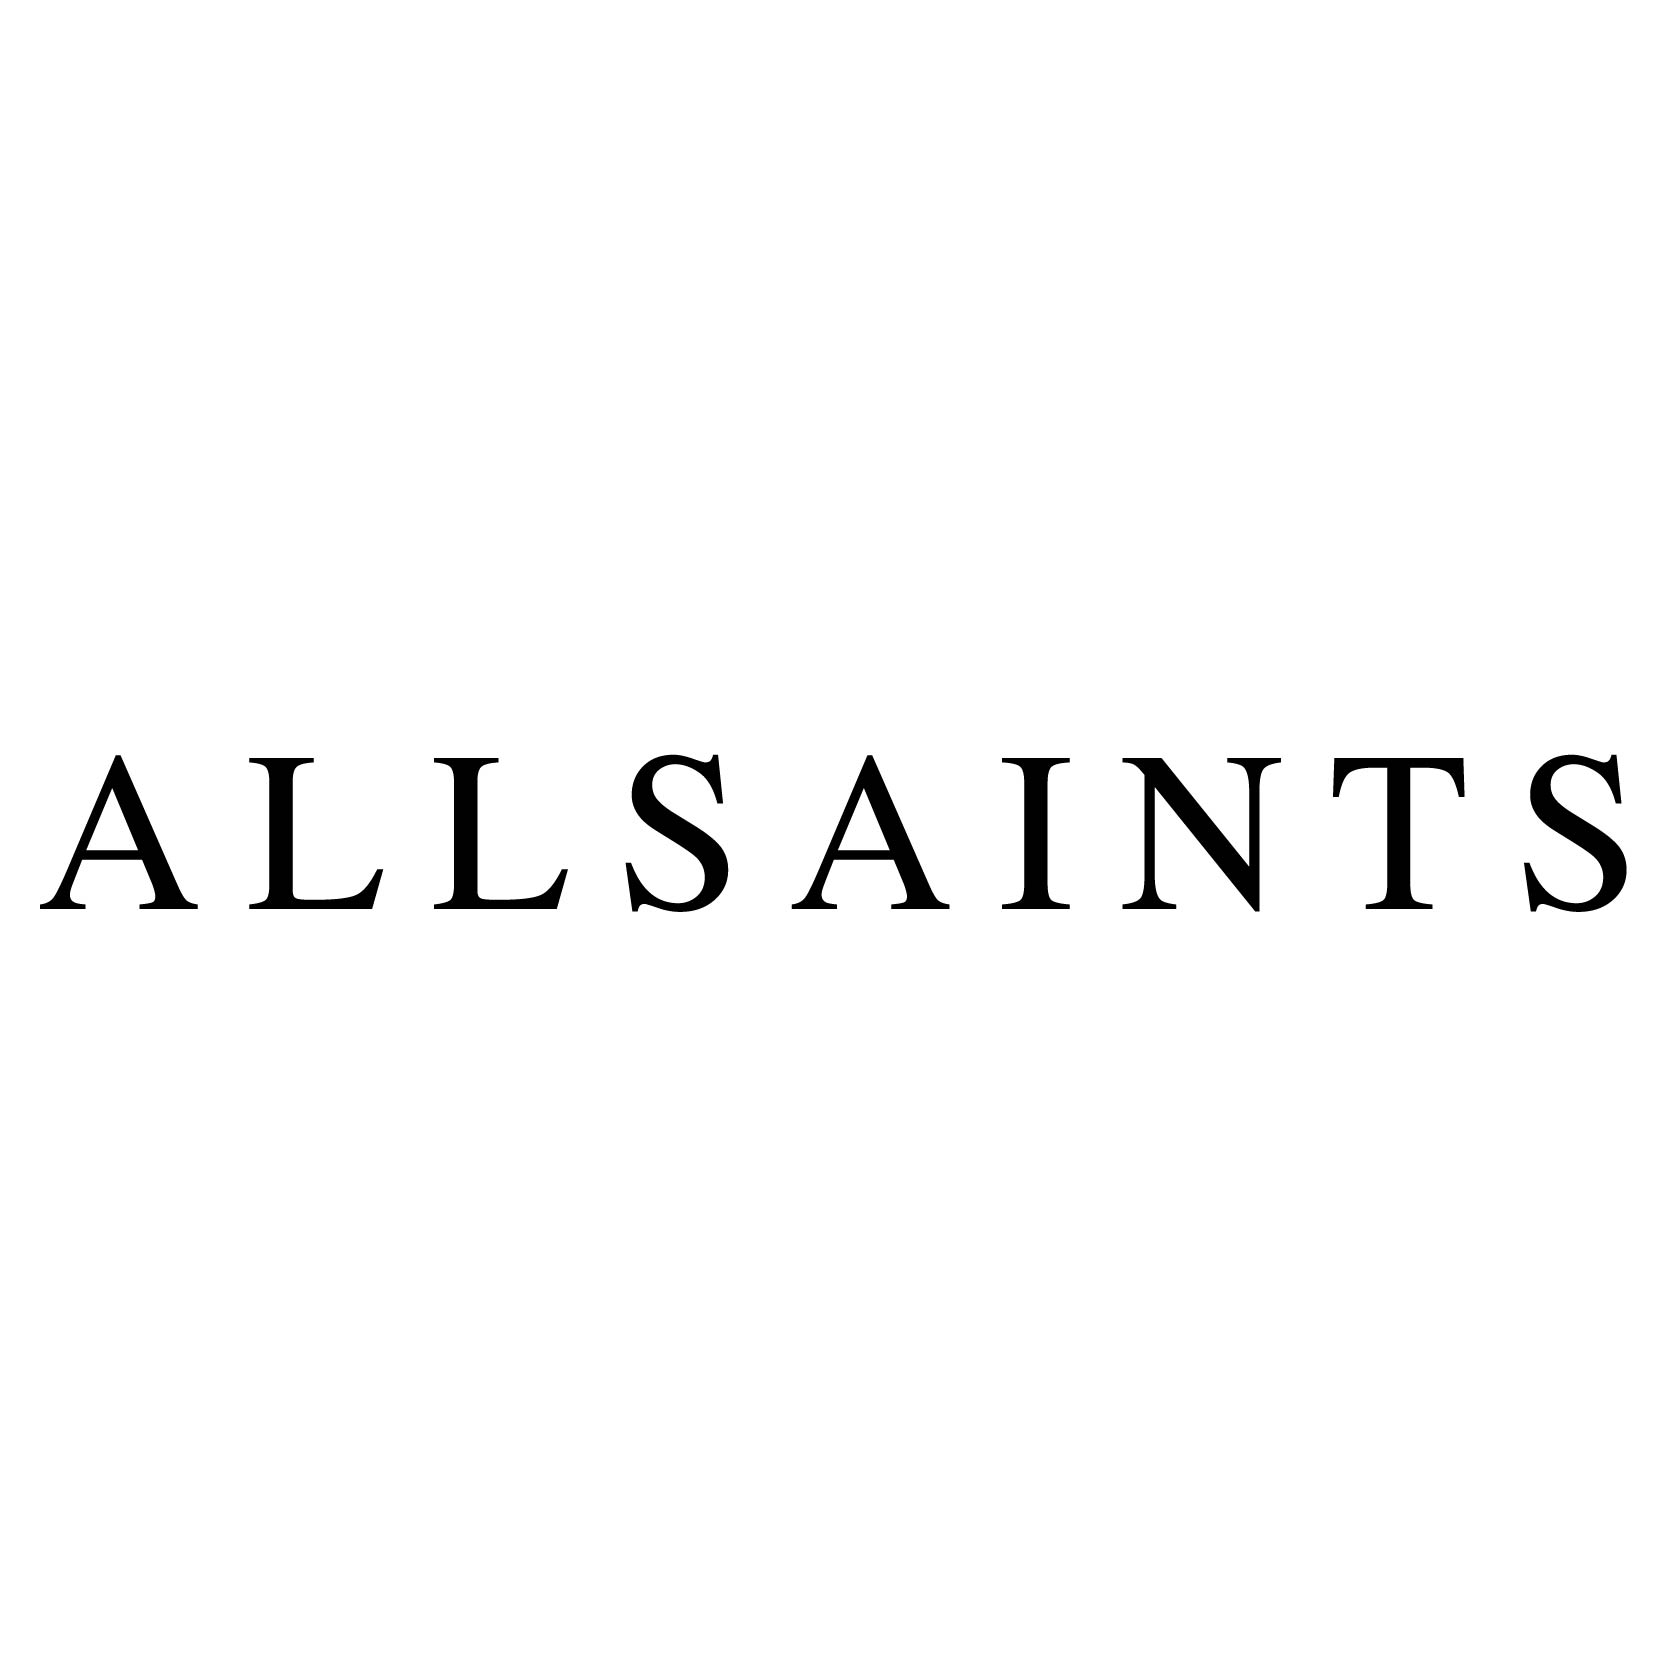 Allsaints